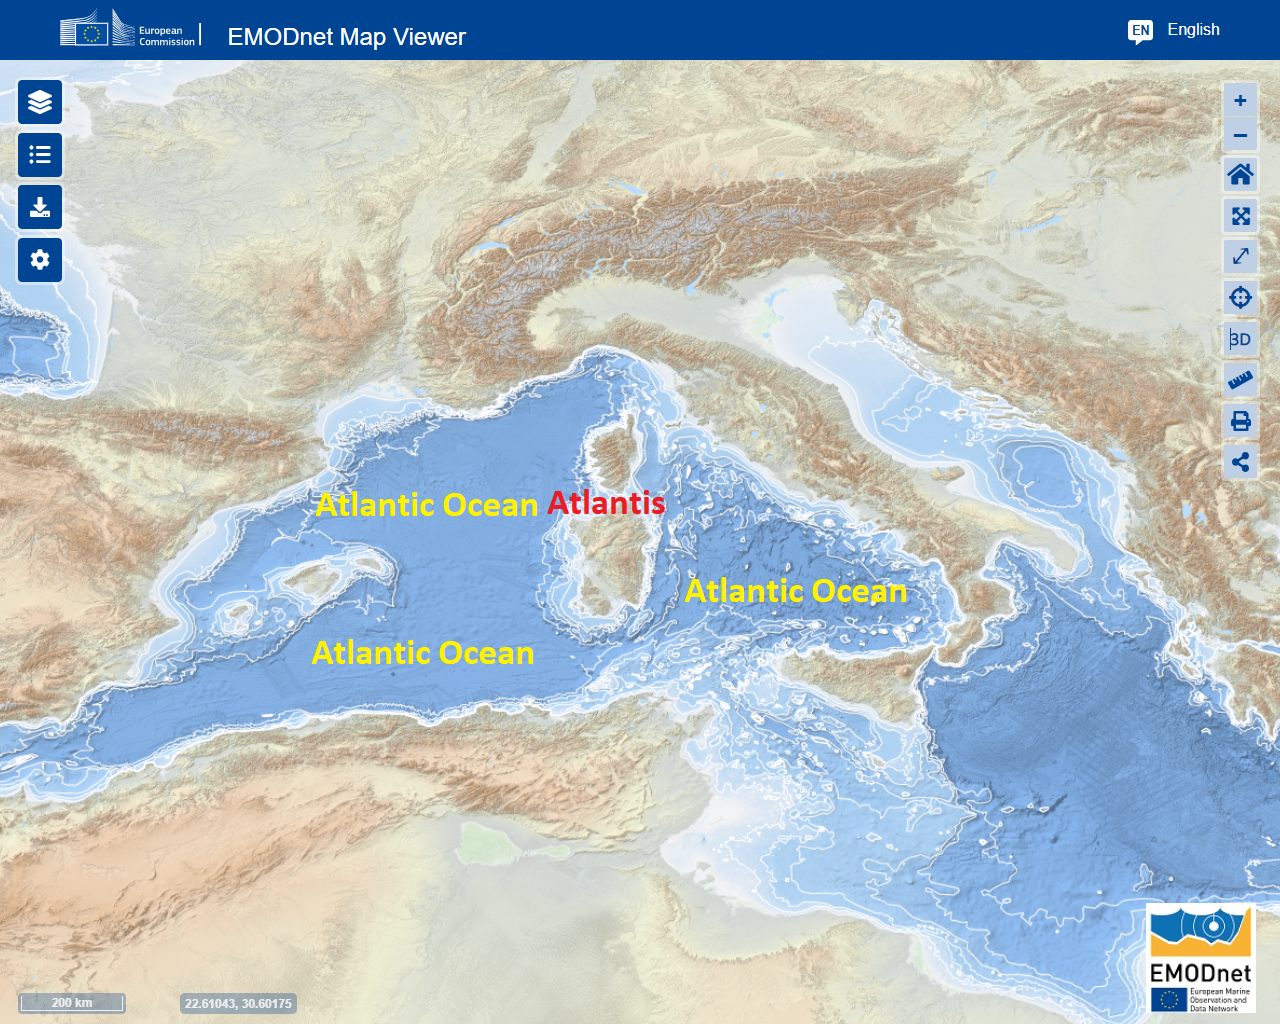 La Atlántida en el Océano Atlántico Mesolítico hoy llamado Mar Mediterráneo